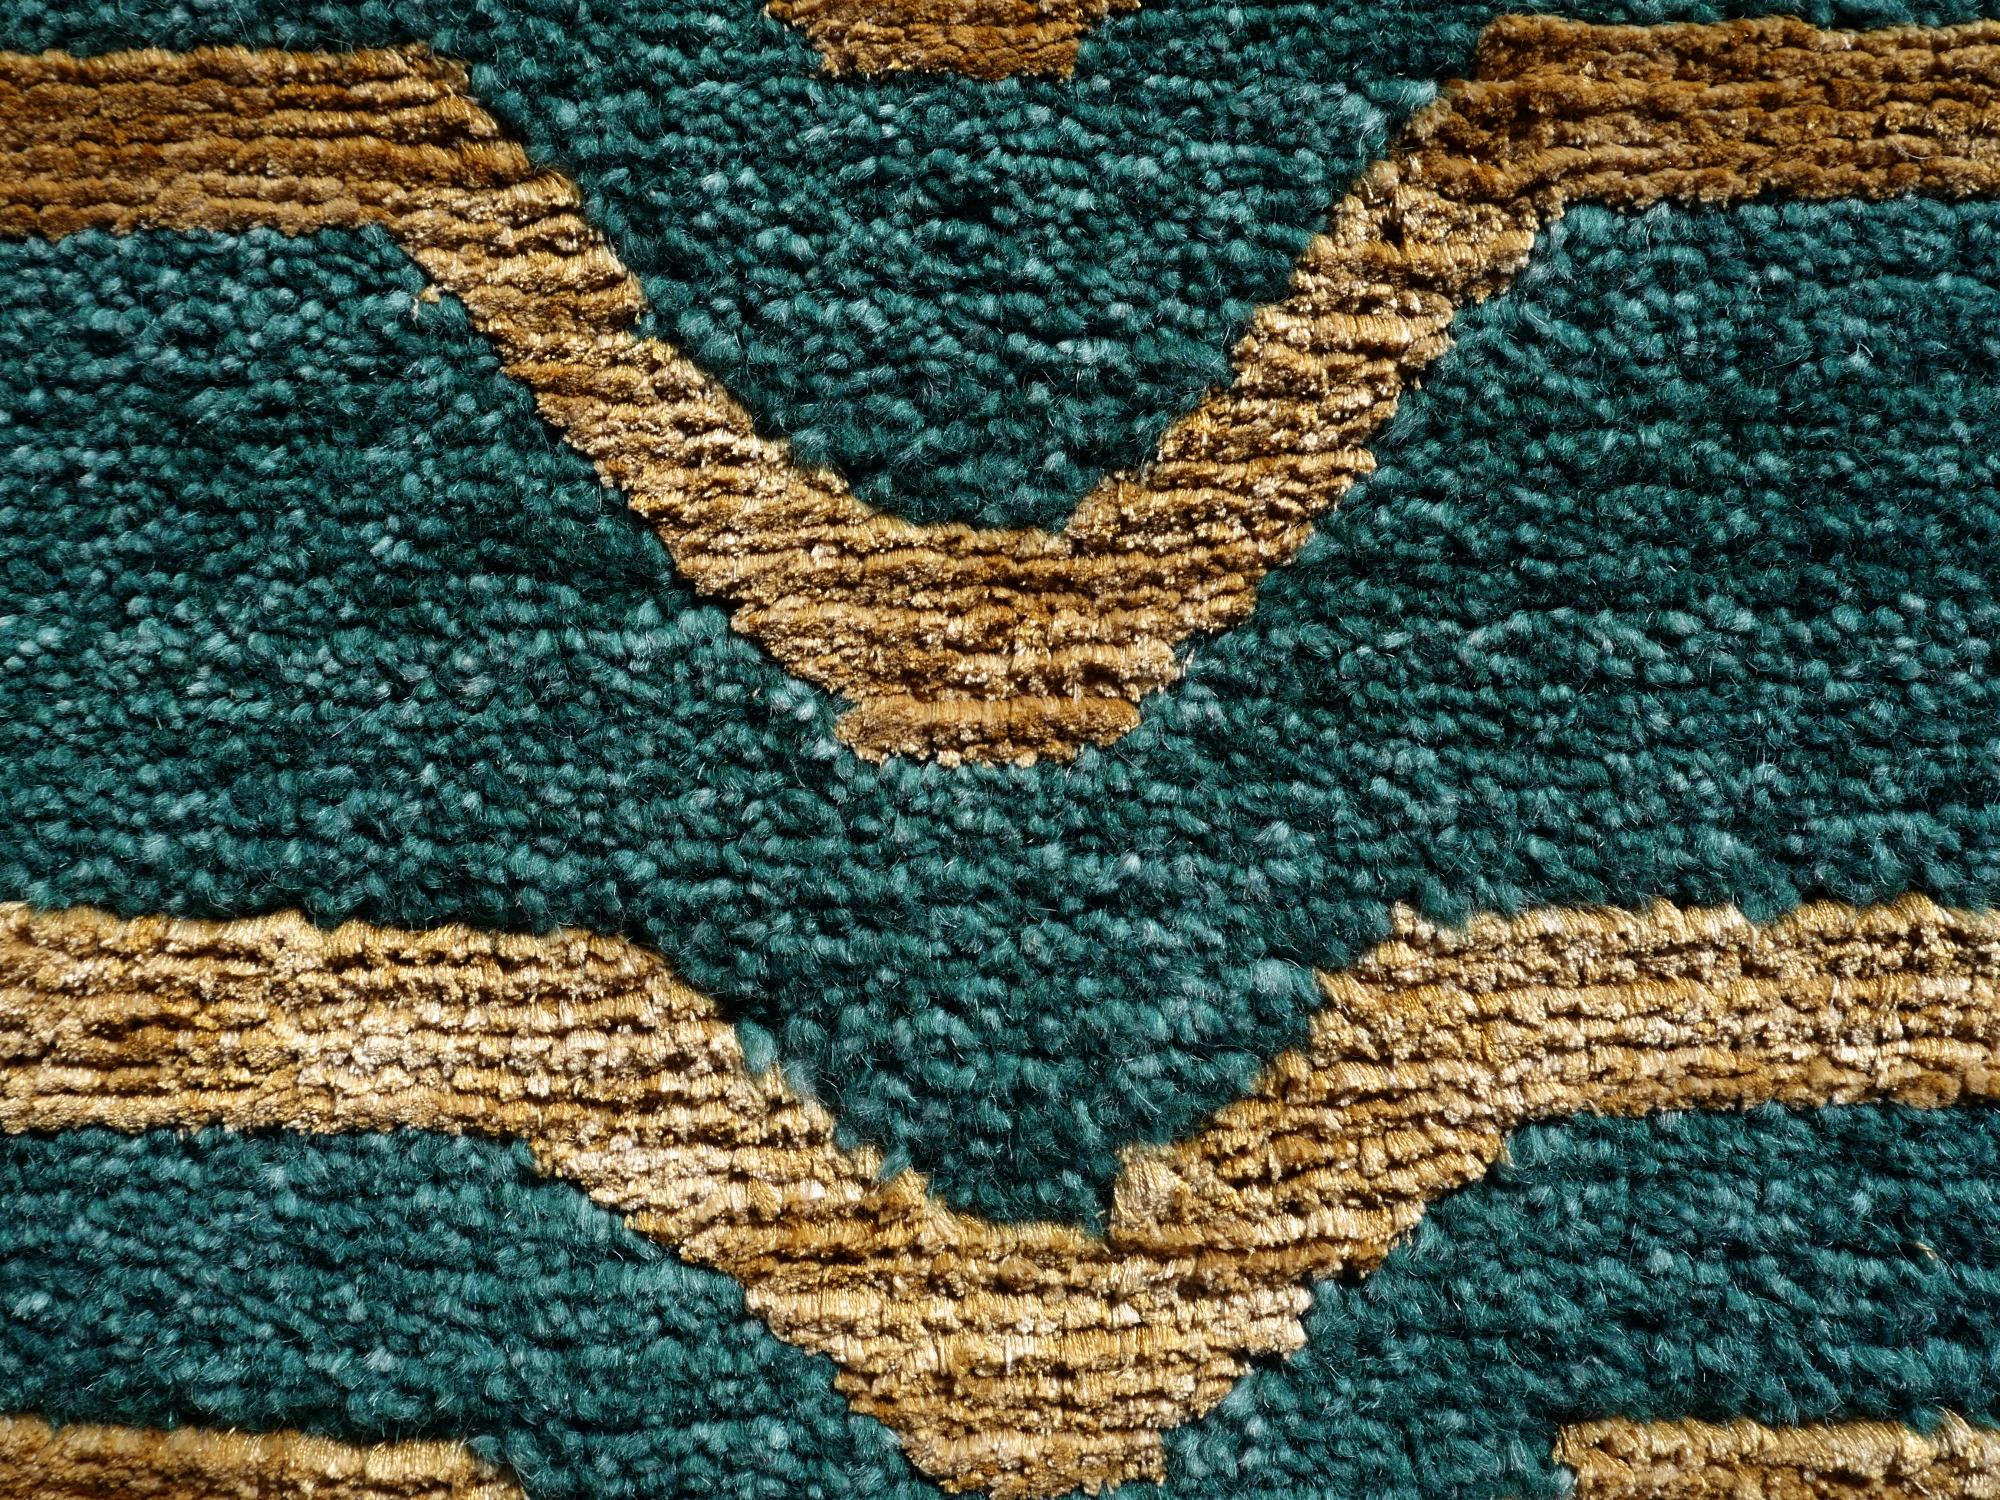 Tapis tigre tibétain vert laine or soie de la collection Djoharian, noué à la main au Népal.

Ce motif traditionnel de tapis tigre se trouve généralement sur des tapis anciens appelés Khaden. Il s'agit d'un tapis de petite taille, d'environ 3 x 6